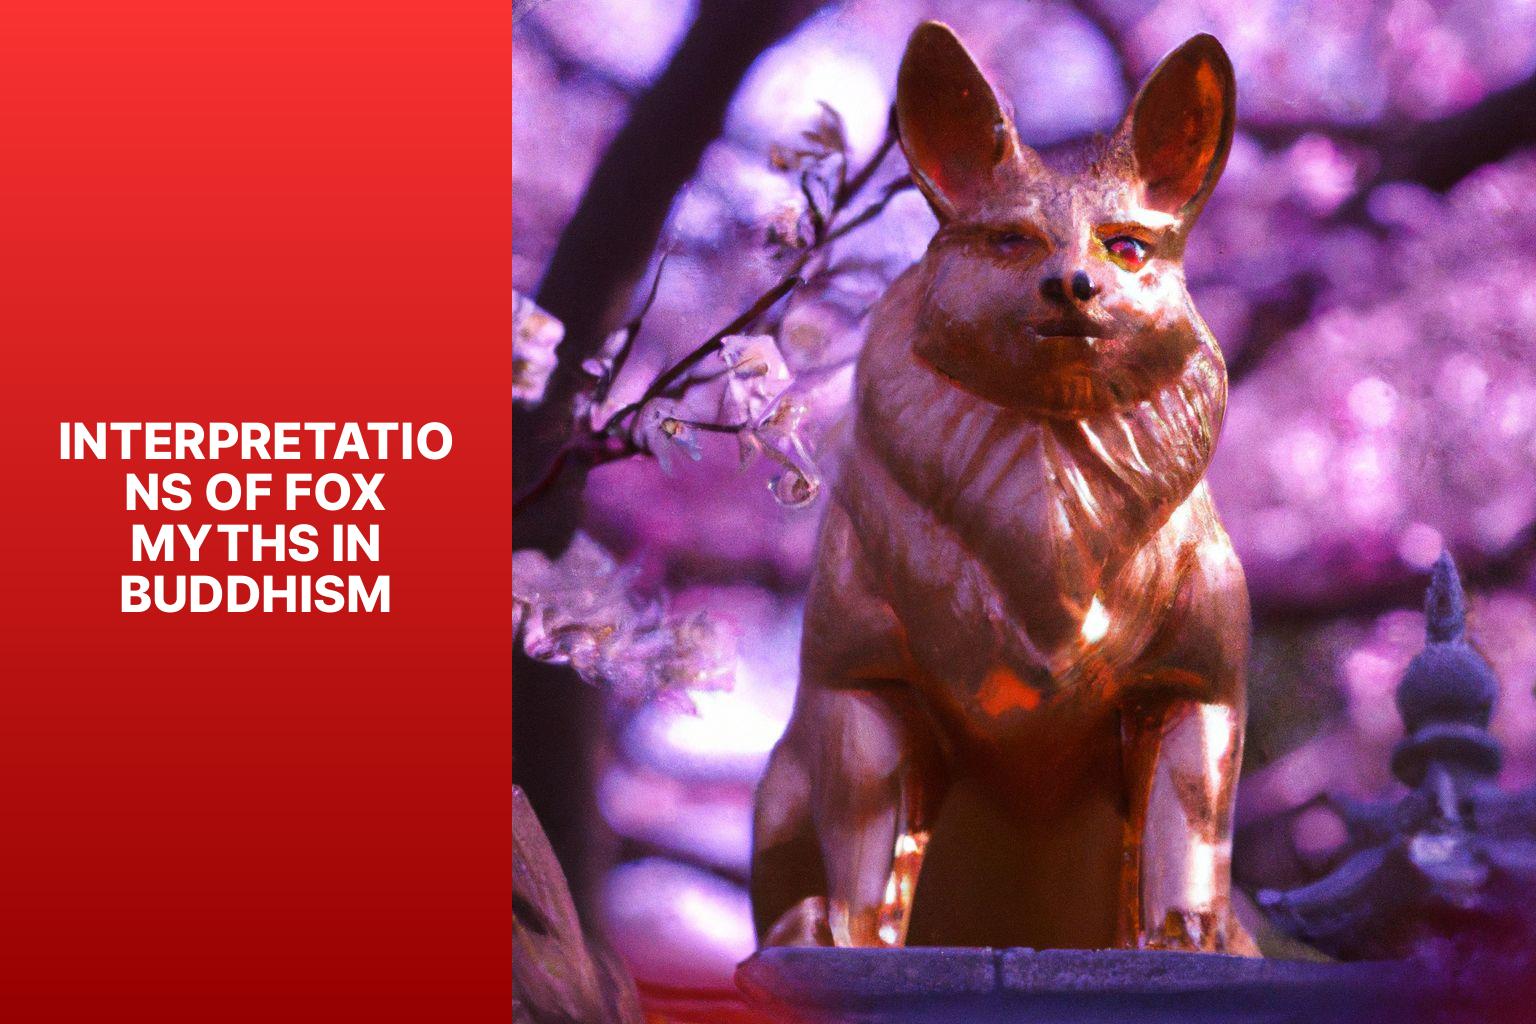 Interpretations of Fox Myths in Buddhism - Fox Myths in Buddhism 